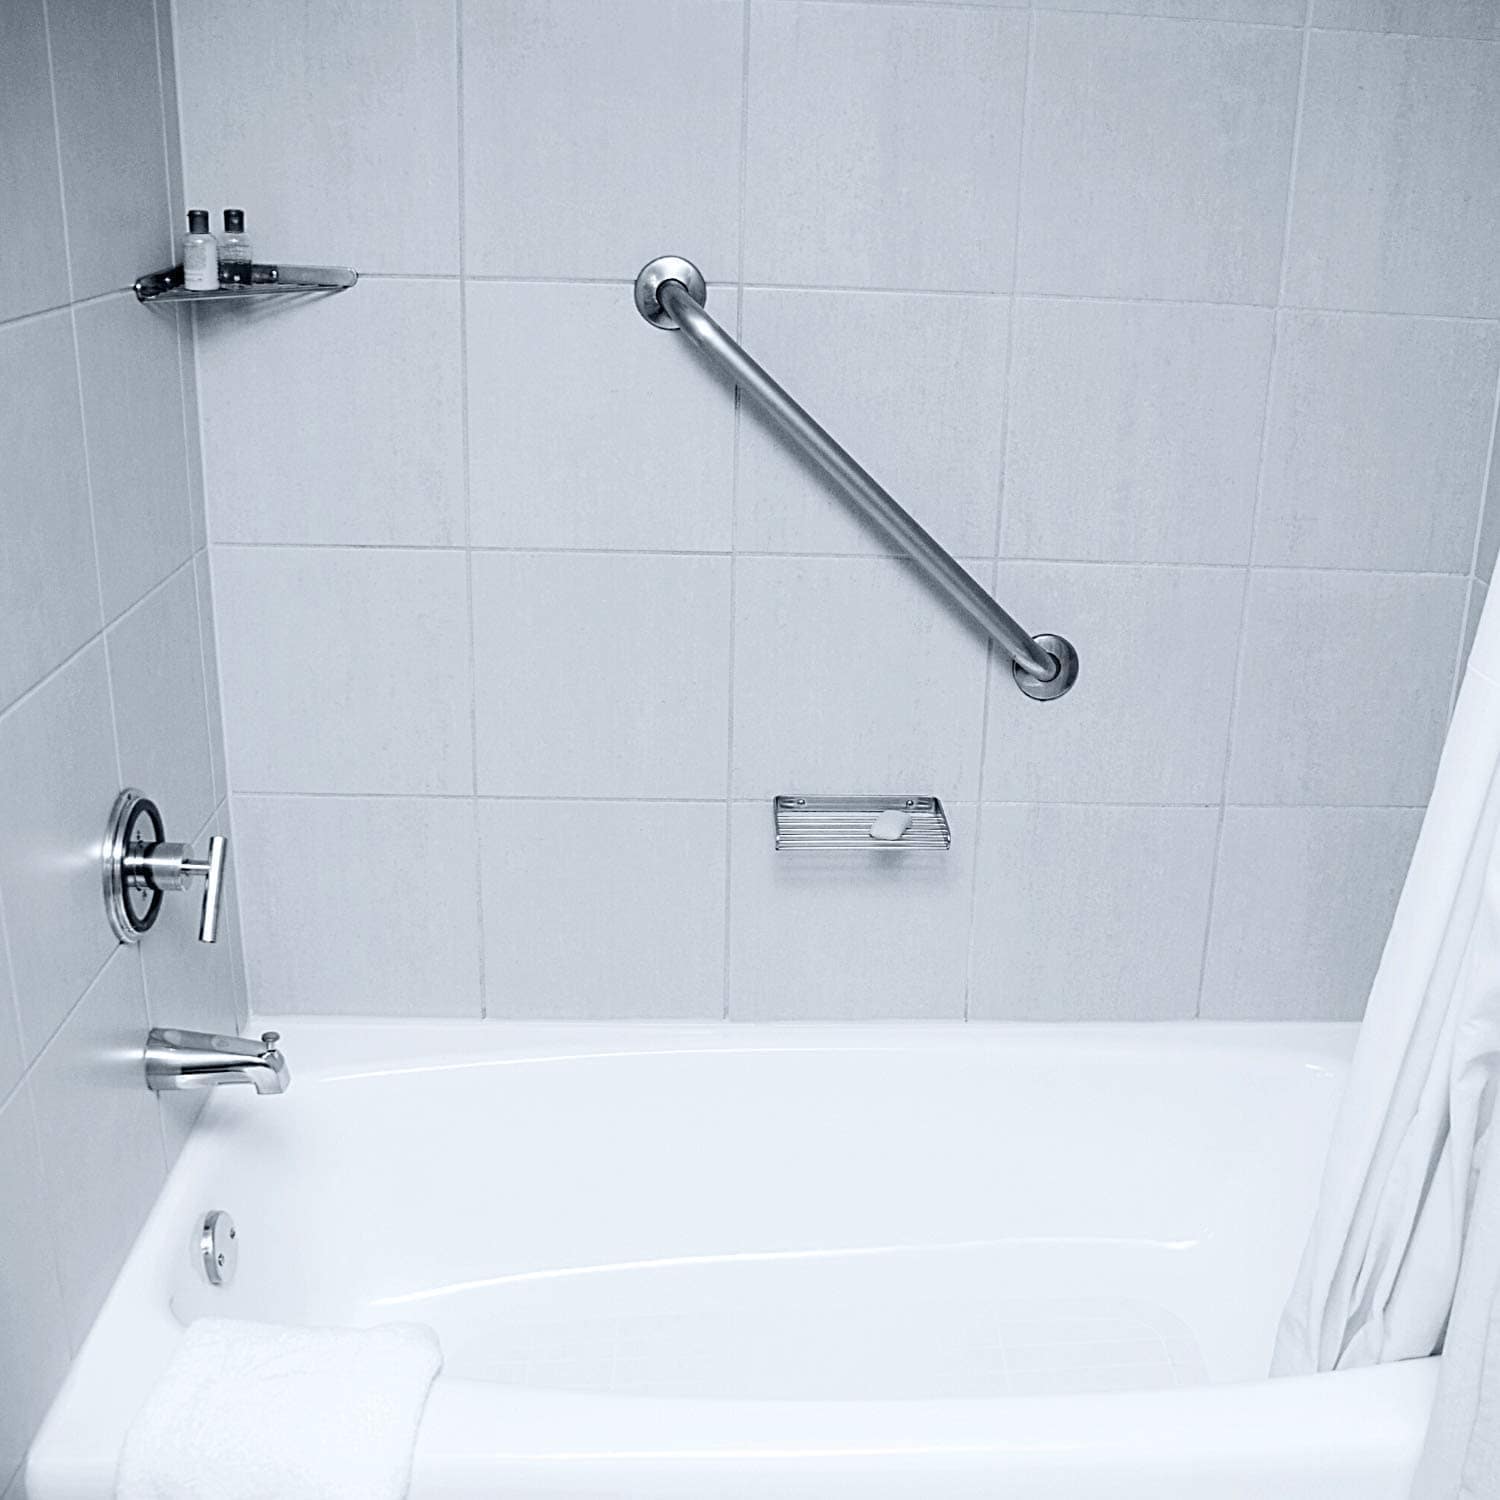 Zep Cleaner, Foaming Shower, Tub & Tile - 1 qt